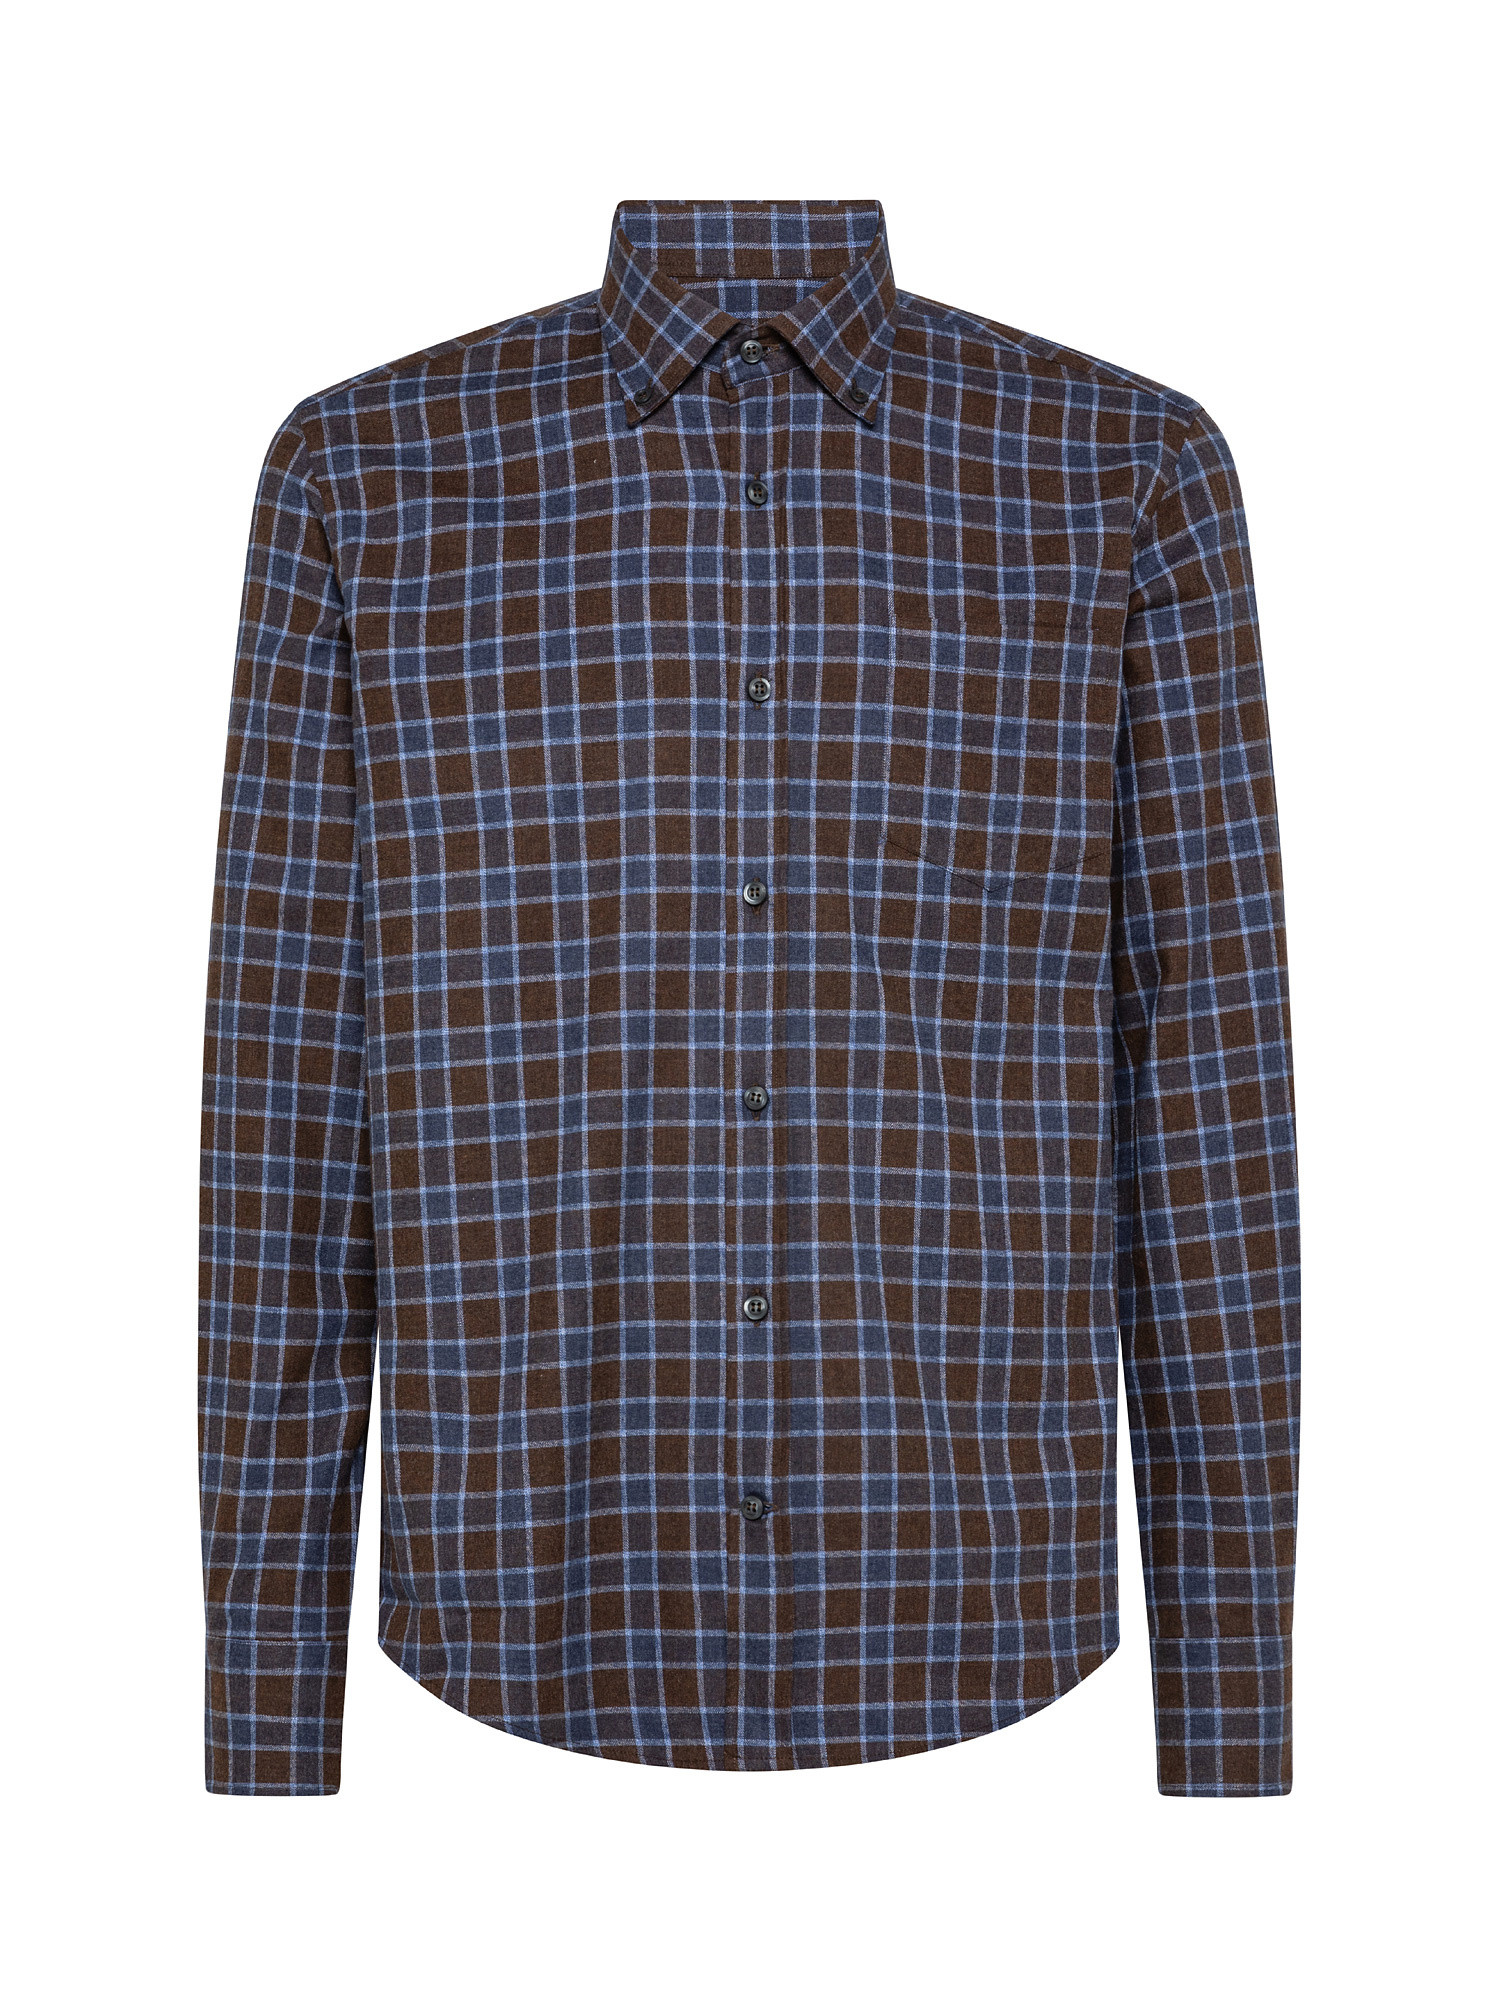 Melange flannel shirt, Multicolor, large image number 0